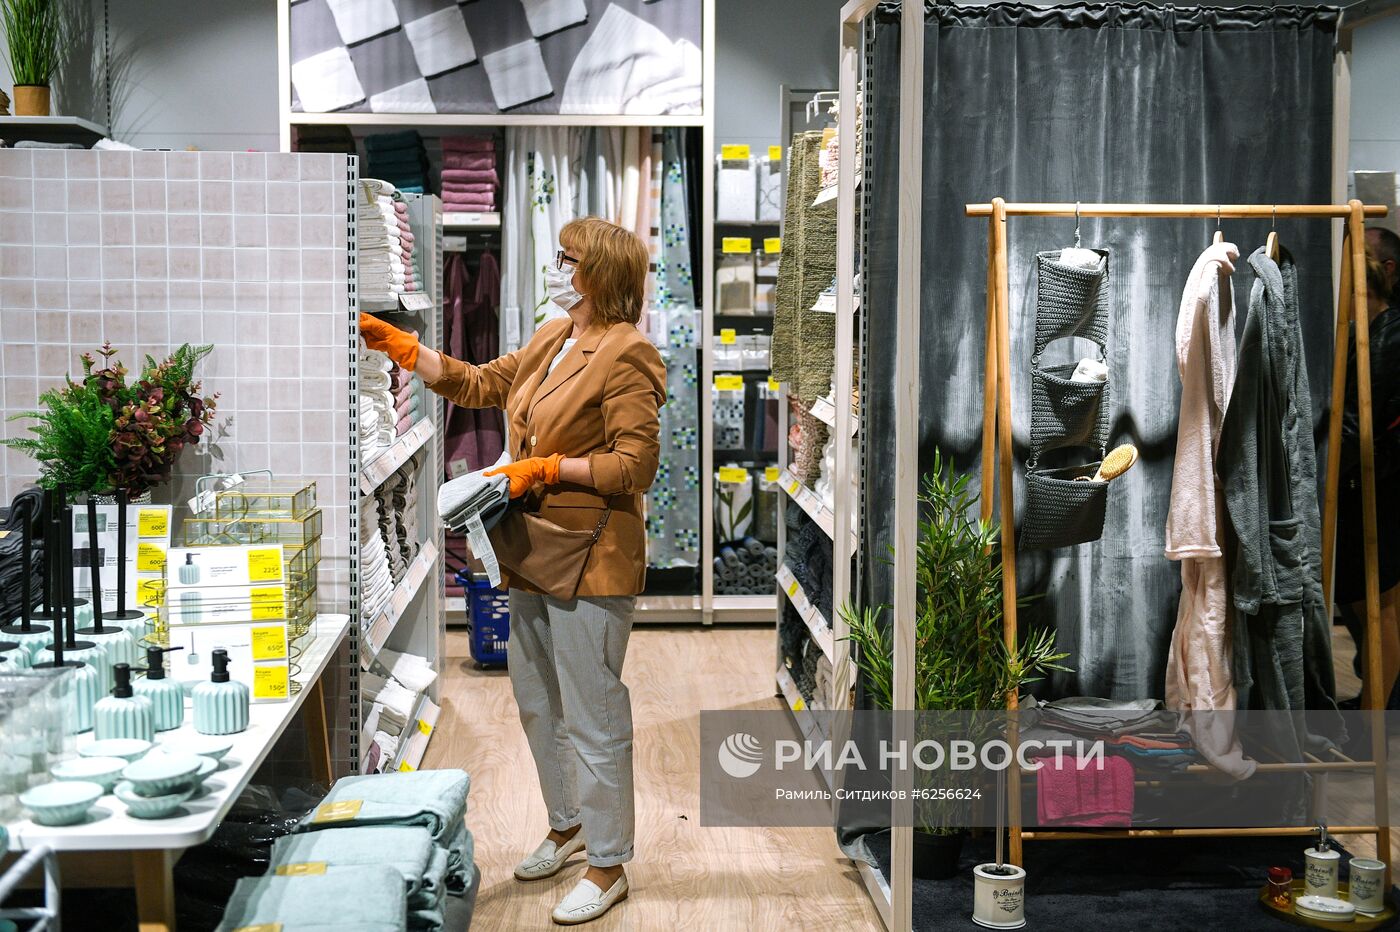 Первый магазин датского мебельного ритейлера Jysk открылся в Москве